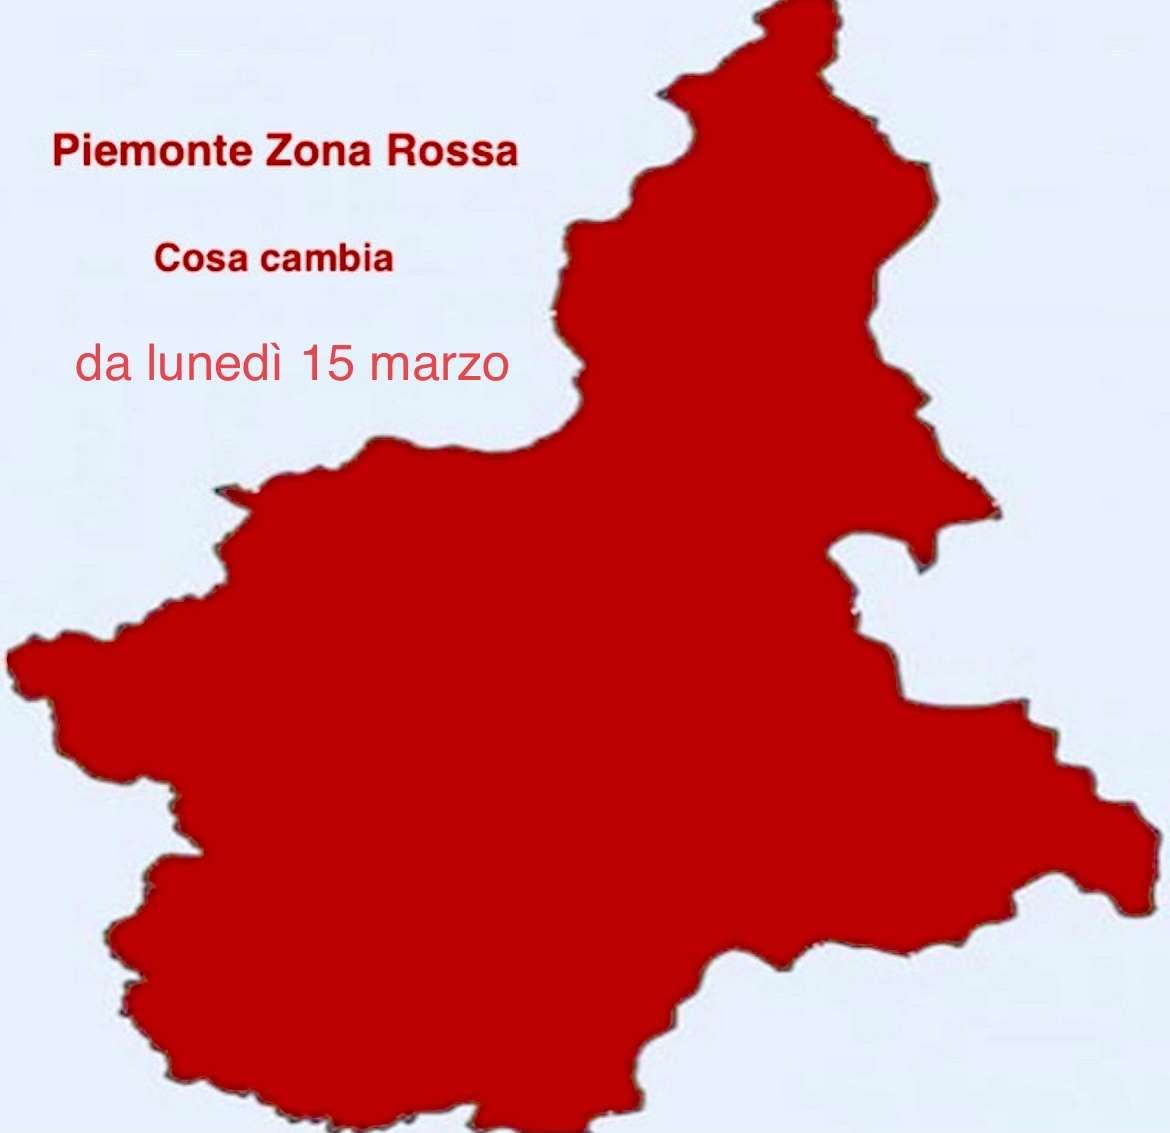 Piemonte Zona Rossa: da lunedì 15 marzo fino al 6 aprile. Indice Rt a 1,41